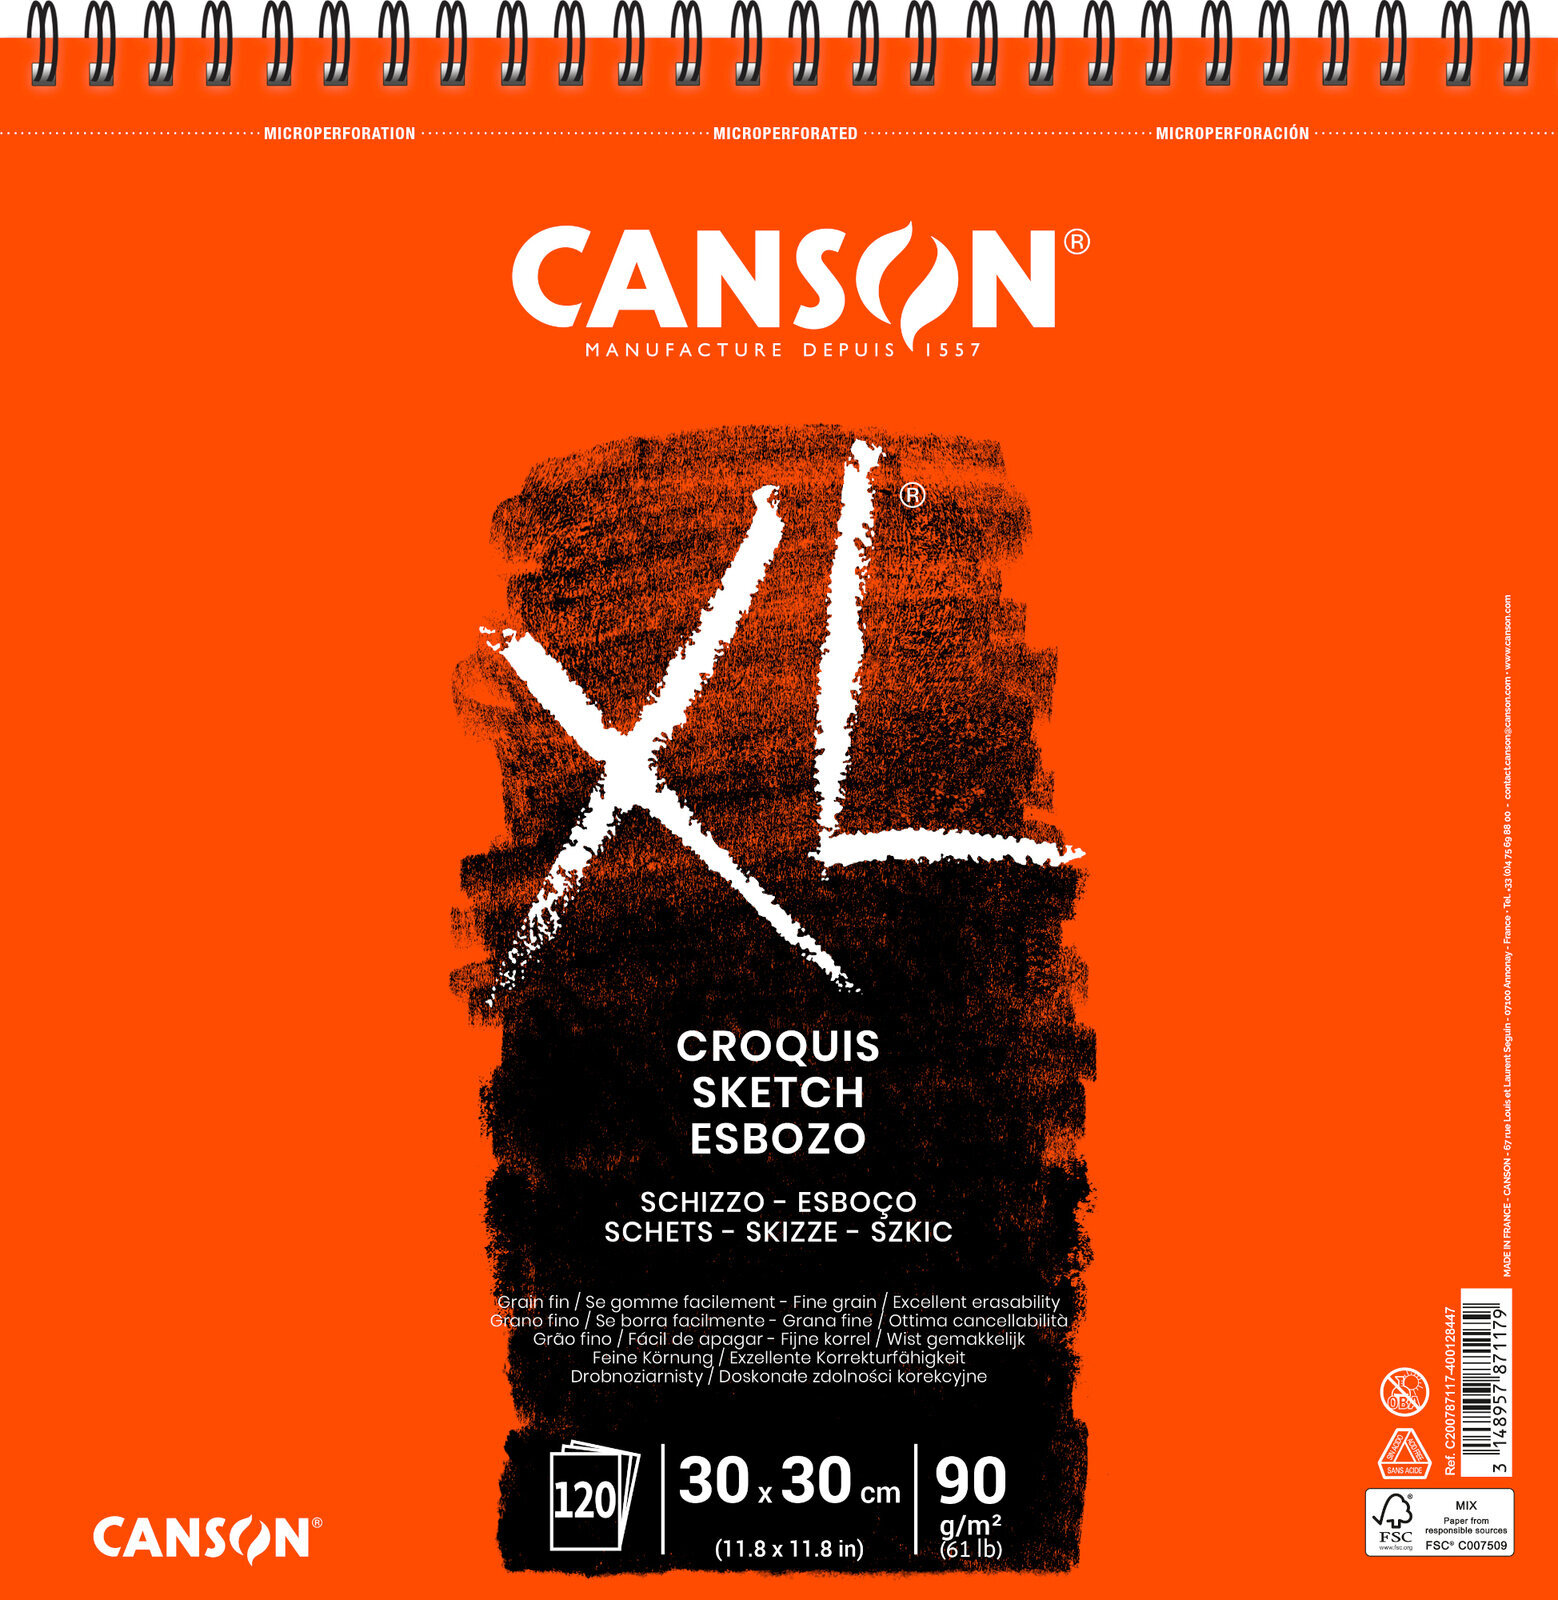 Vázlattömb Canson Sp XL Sketch 30 x 30 cm 90 g Vázlattömb